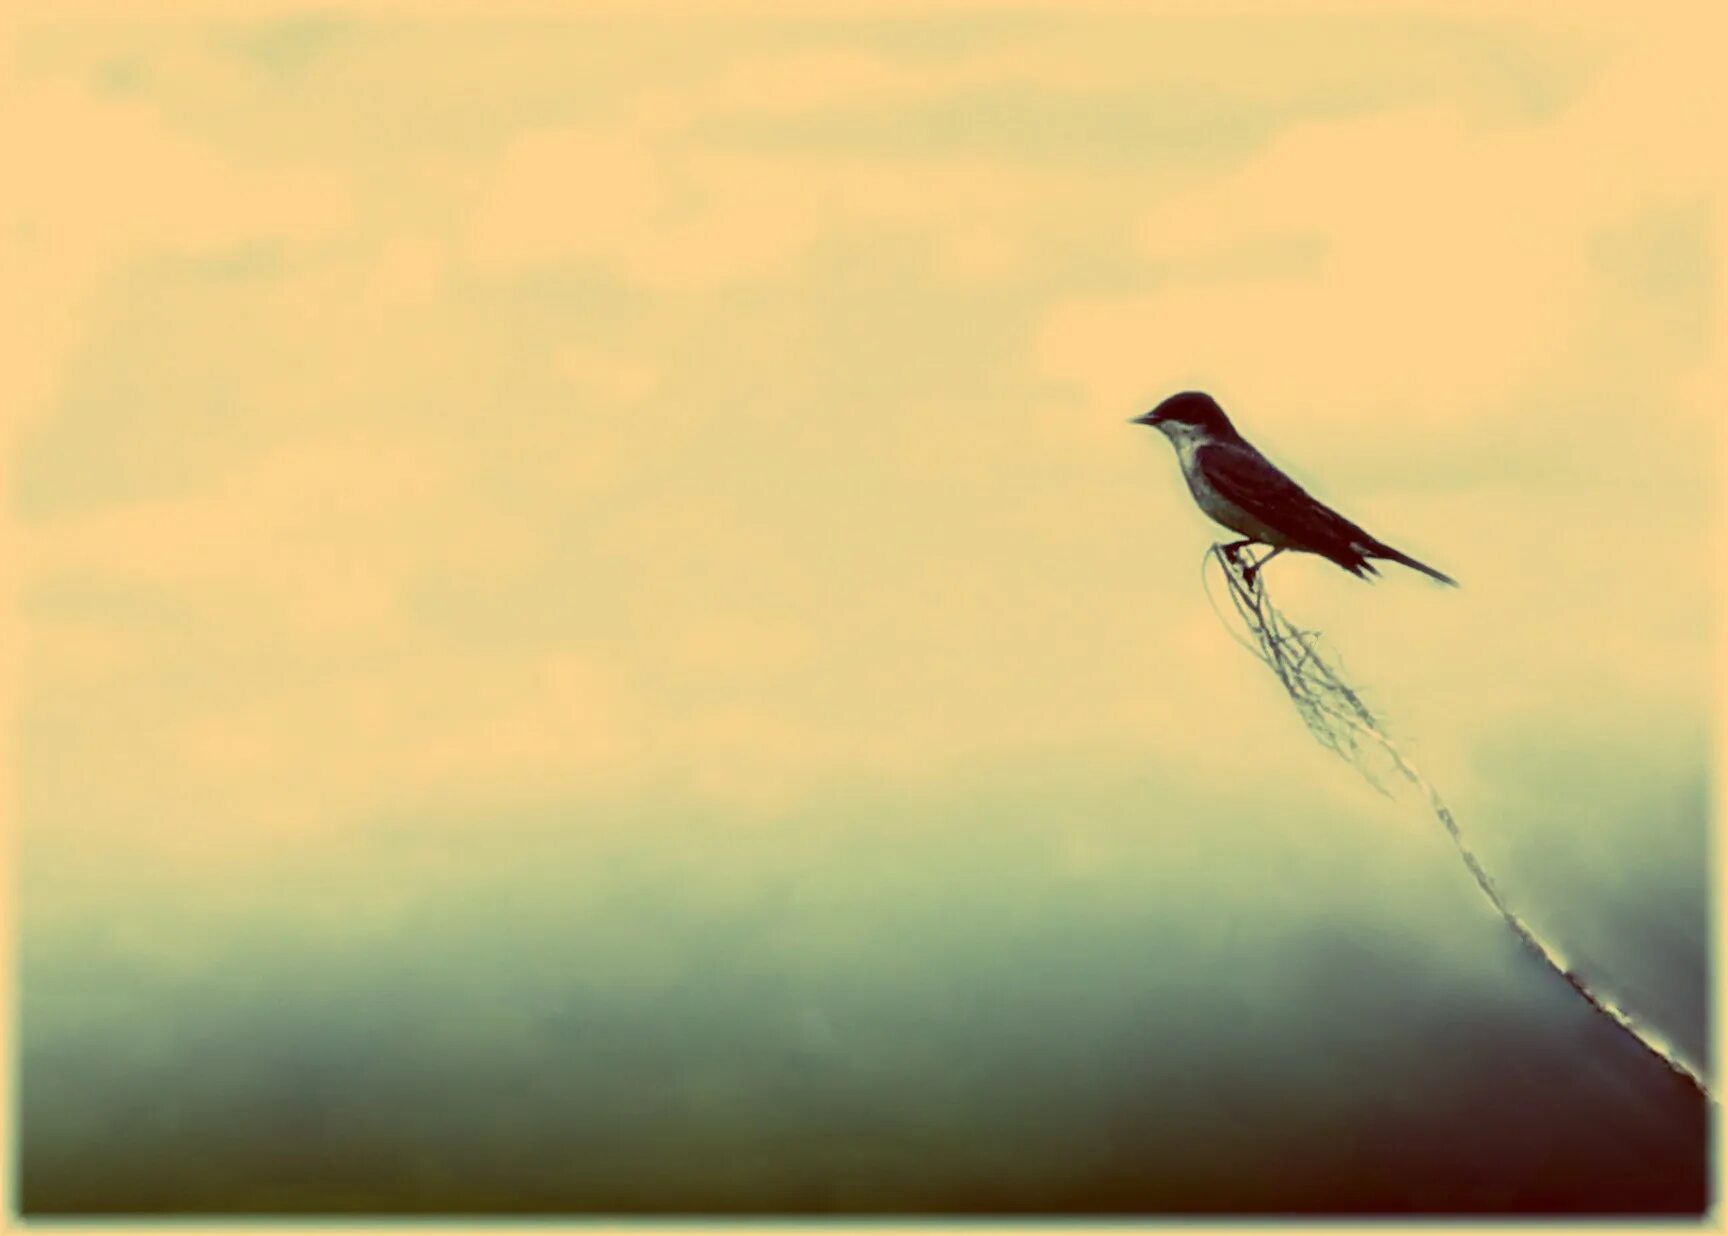 Птица спиной вперед. Маленькая птичка в полете картина. Птица летит спиной вперед. В штопоре природа птица. Птица в полёте илюстрация.